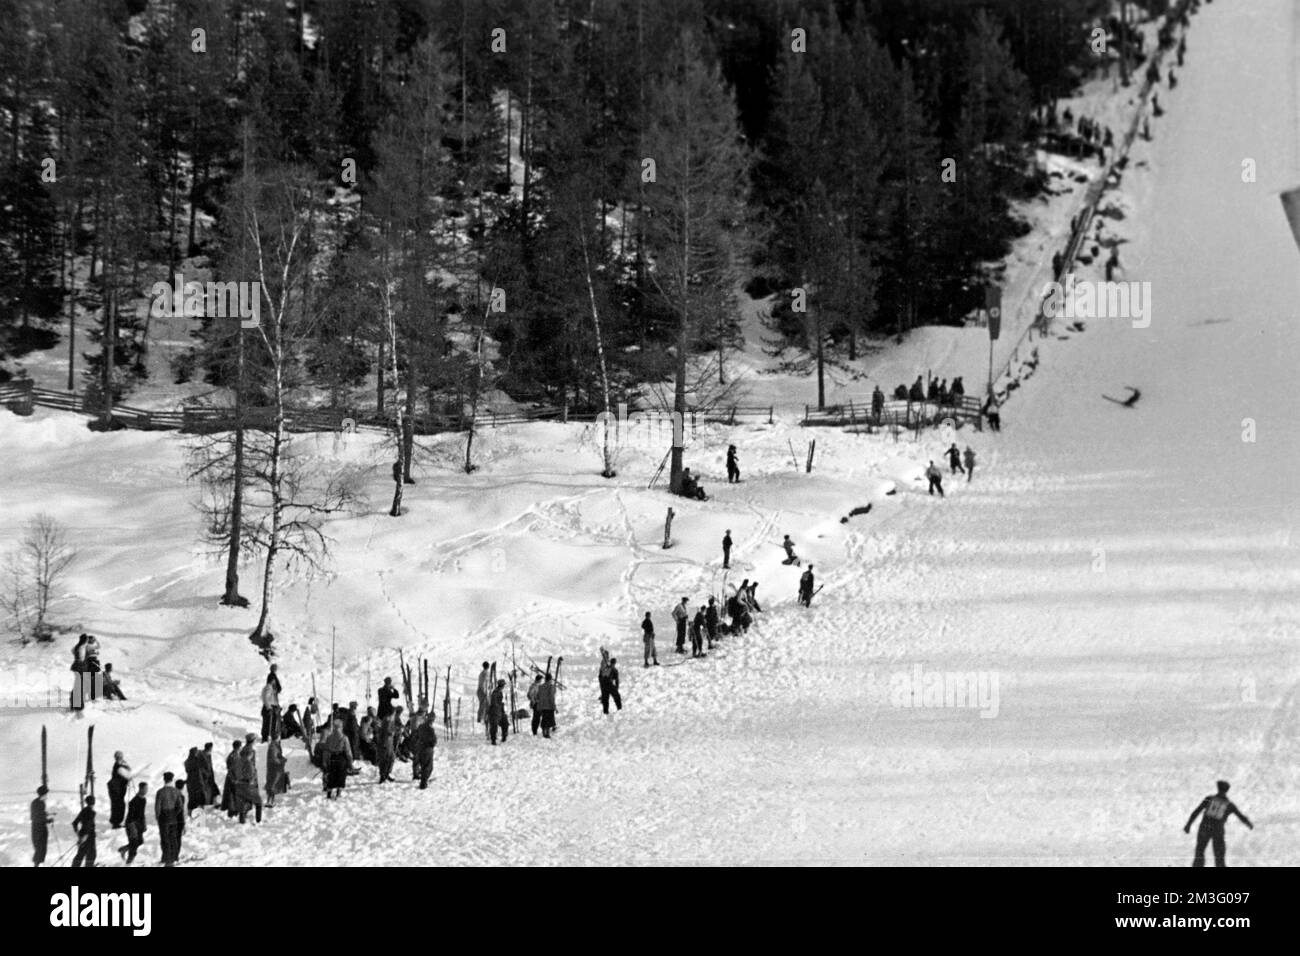 Die Große Olympiaschanze bei den Olympischen Winterspielen in Garmisch-Partenkirchen, 1936. The Great Olympic Ski Jump at the Winter Olympics in Garmisch-Partenkirchen, 1936. Stock Photo